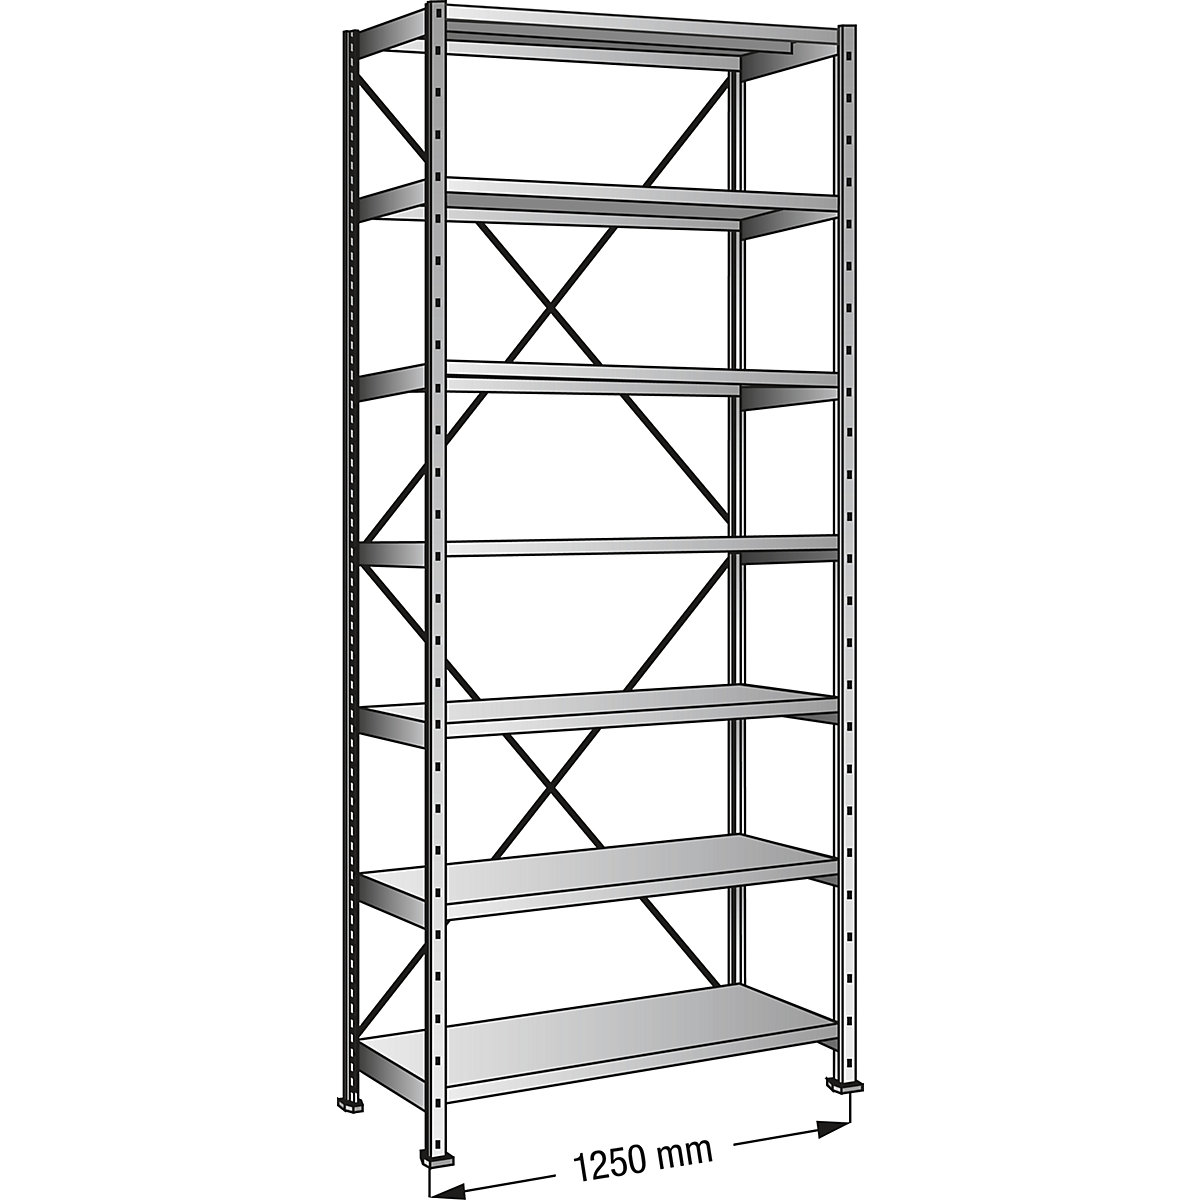 Boltless shelving unit, zinc plated, 7 shelves, height 2640 mm, shelf width 1200 mm, depth 200 mm, standard shelf unit